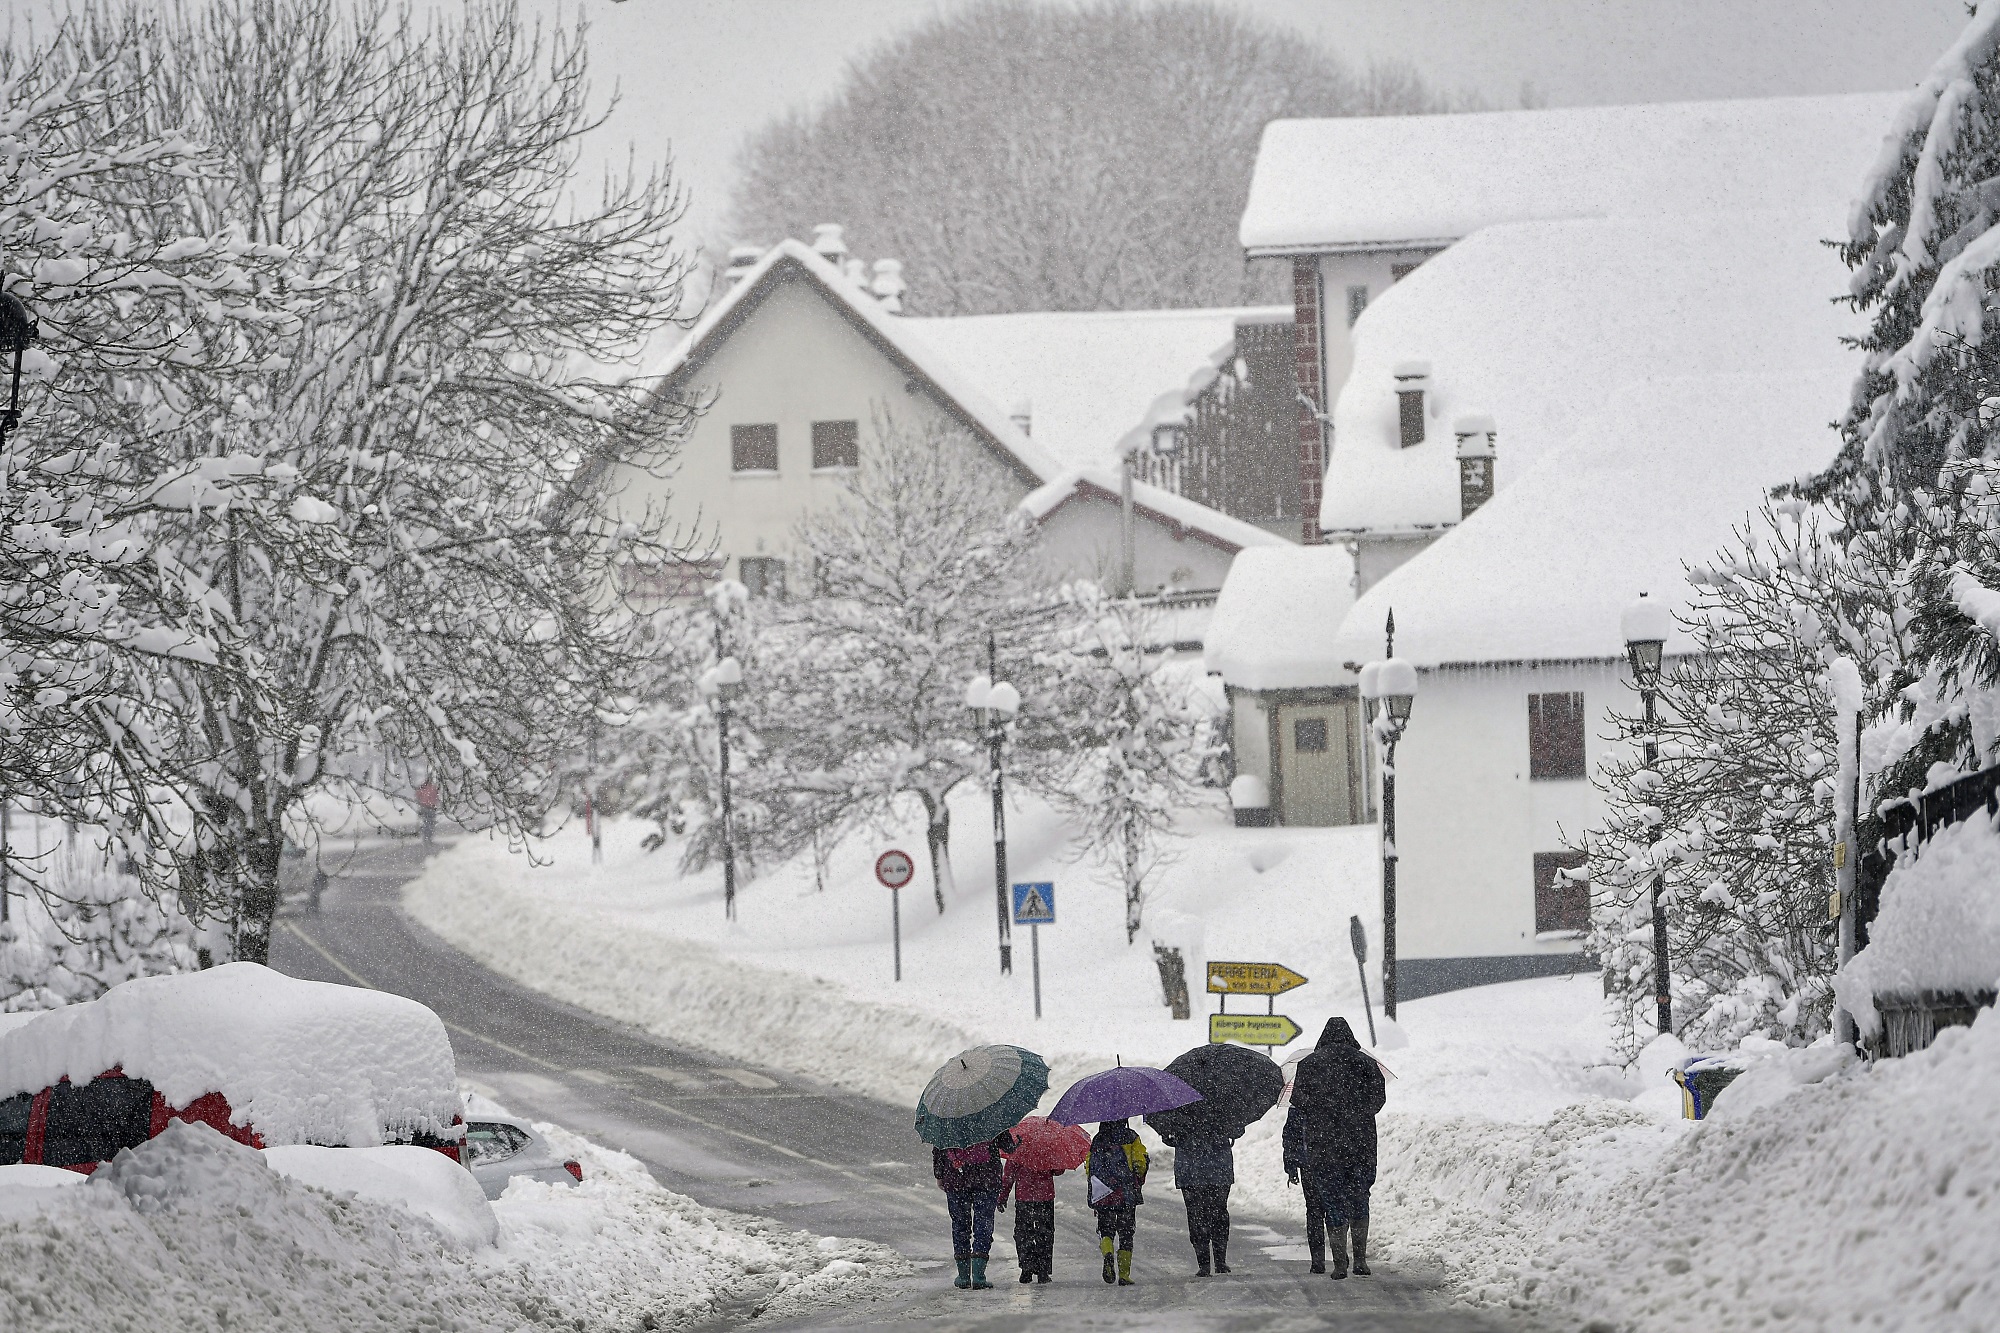 Ευρώπη: Καταιγίδες, ισχυροί άνεμοι και κλειστοί χιονισμένοι δρόμοι